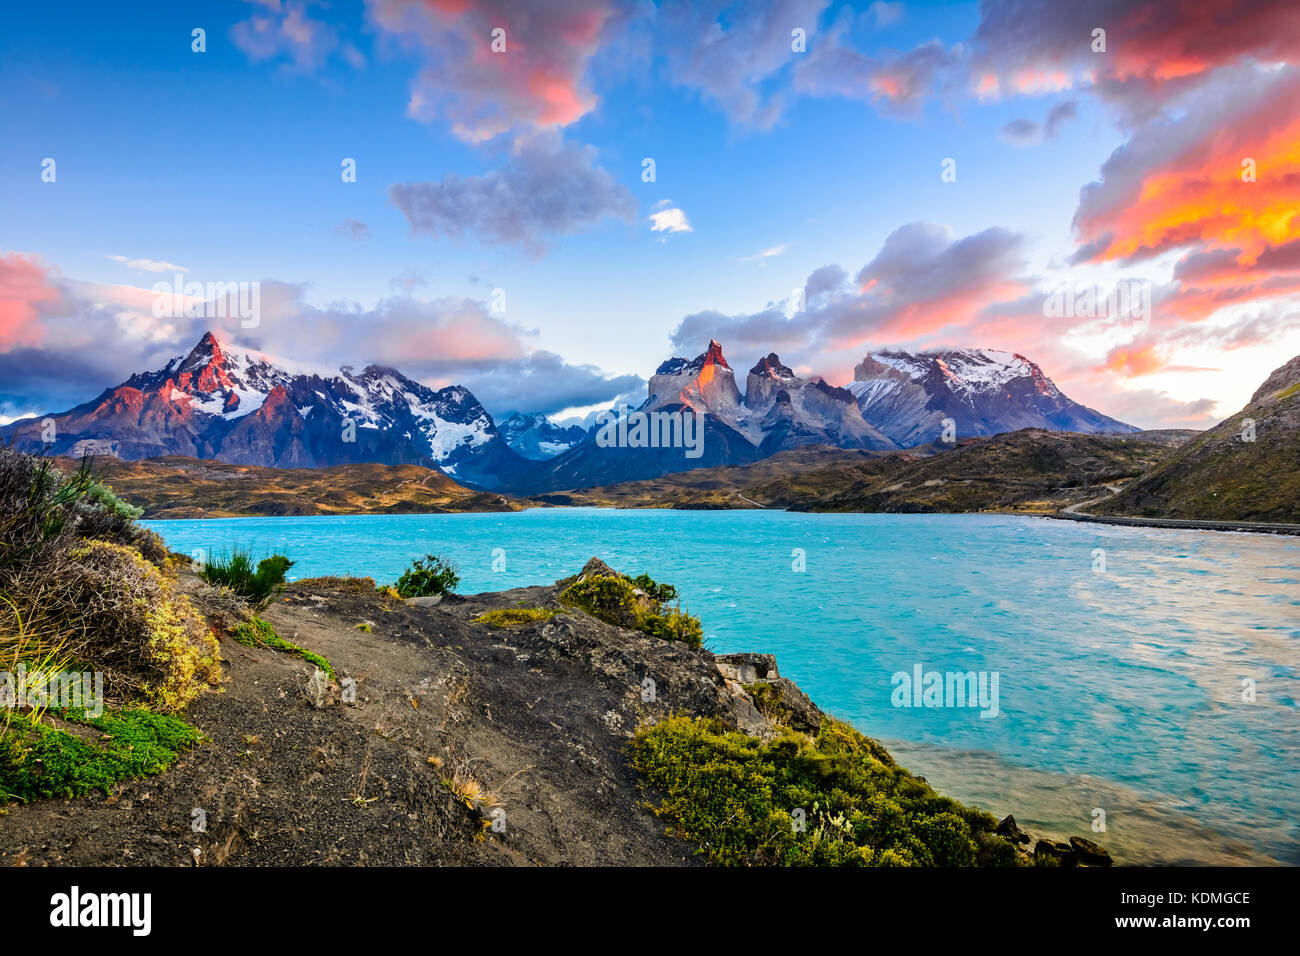 Torres del Paine au lac Pehoé, Patagonie, Chili - Patagonie du Sud, un champ de Magellanes de l'Amérique du Sud Banque D'Images